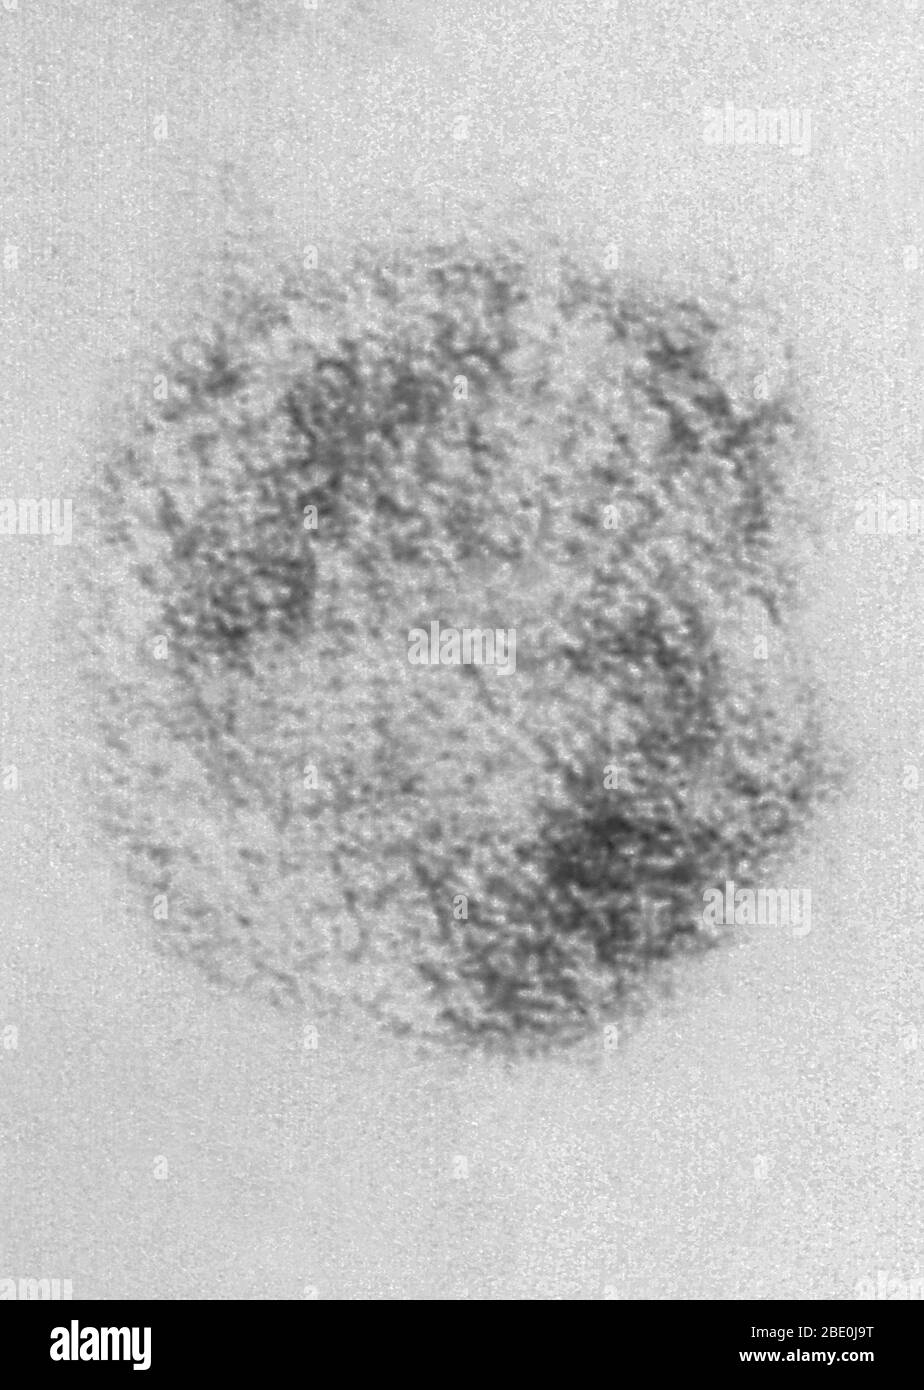 El micrografo de electrones de transmisión con tinción negativa (TEM) representa viriones del virus sin Nombre (SNV), que son miembros del género Hantavirus, dentro de la familia Bunyaviridae. El virus sin Nombre es la causa del síndrome cardiopulmonar por hantavirus (HCPS), también conocido como síndrome pulmonar por hantavirus (HPS), en los seres humanos. En noviembre de 1993, se aisló el hantavirus específico que causó el brote de cuatro esquinas. Usando tejido de un ratón de ciervo que había sido atrapado cerca de la casa de Nuevo México de una persona que había tenido la enfermedad, la Subdivisión de patógenos Especiales de los CDC cultivó el virus en el laboratorio Foto de stock